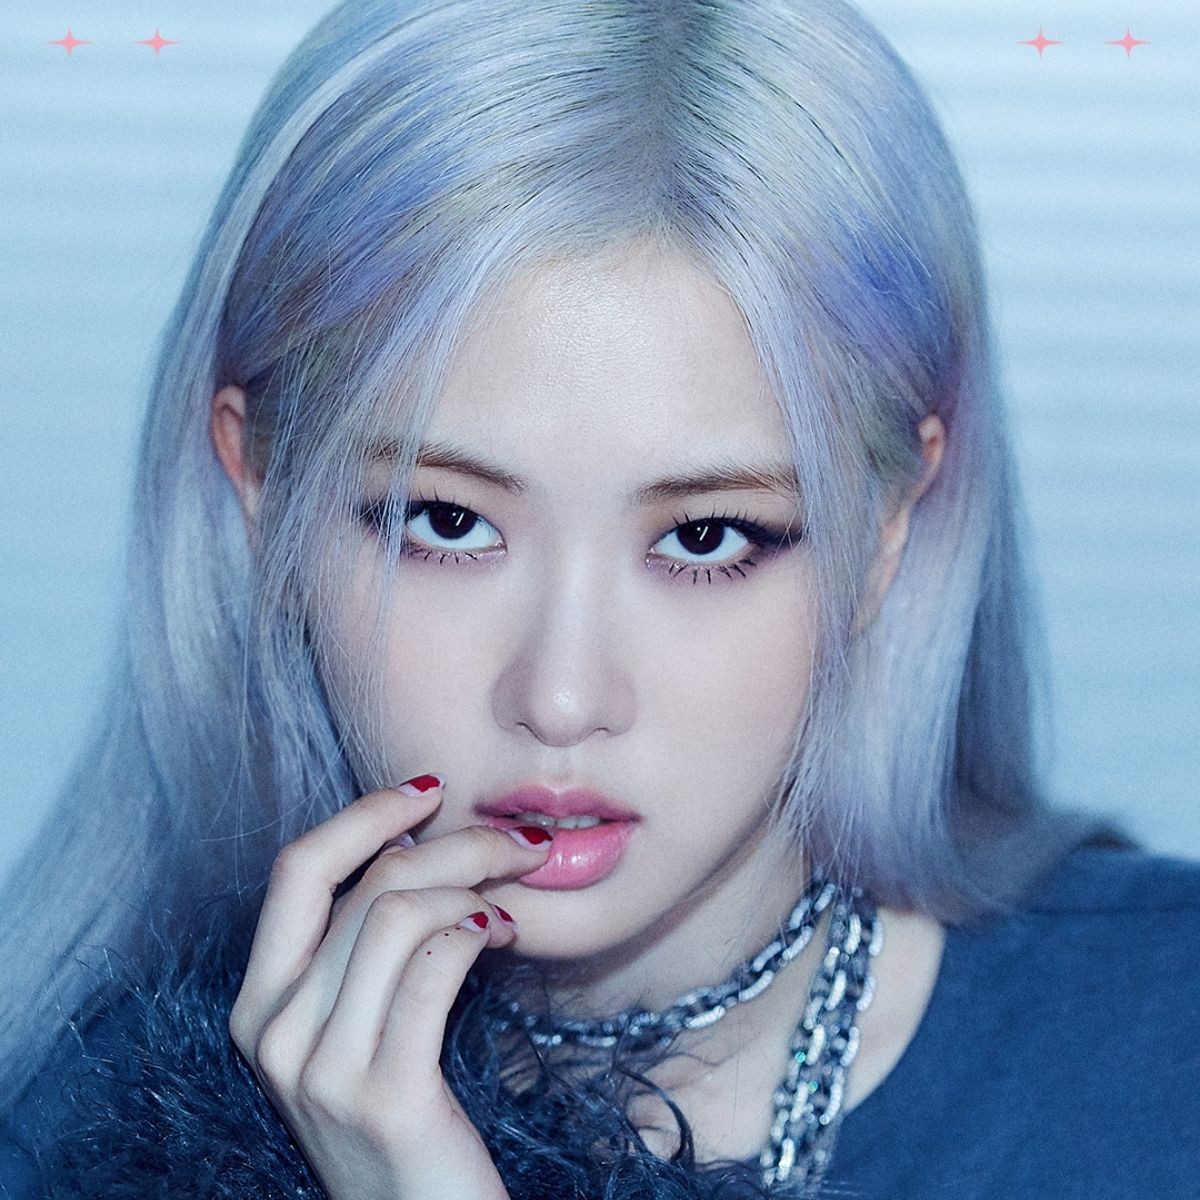 Netizen Hàn Quốc dành lời khen ngợi cho màu giọng và khả năng hát live của Rosé - BLACKPINK